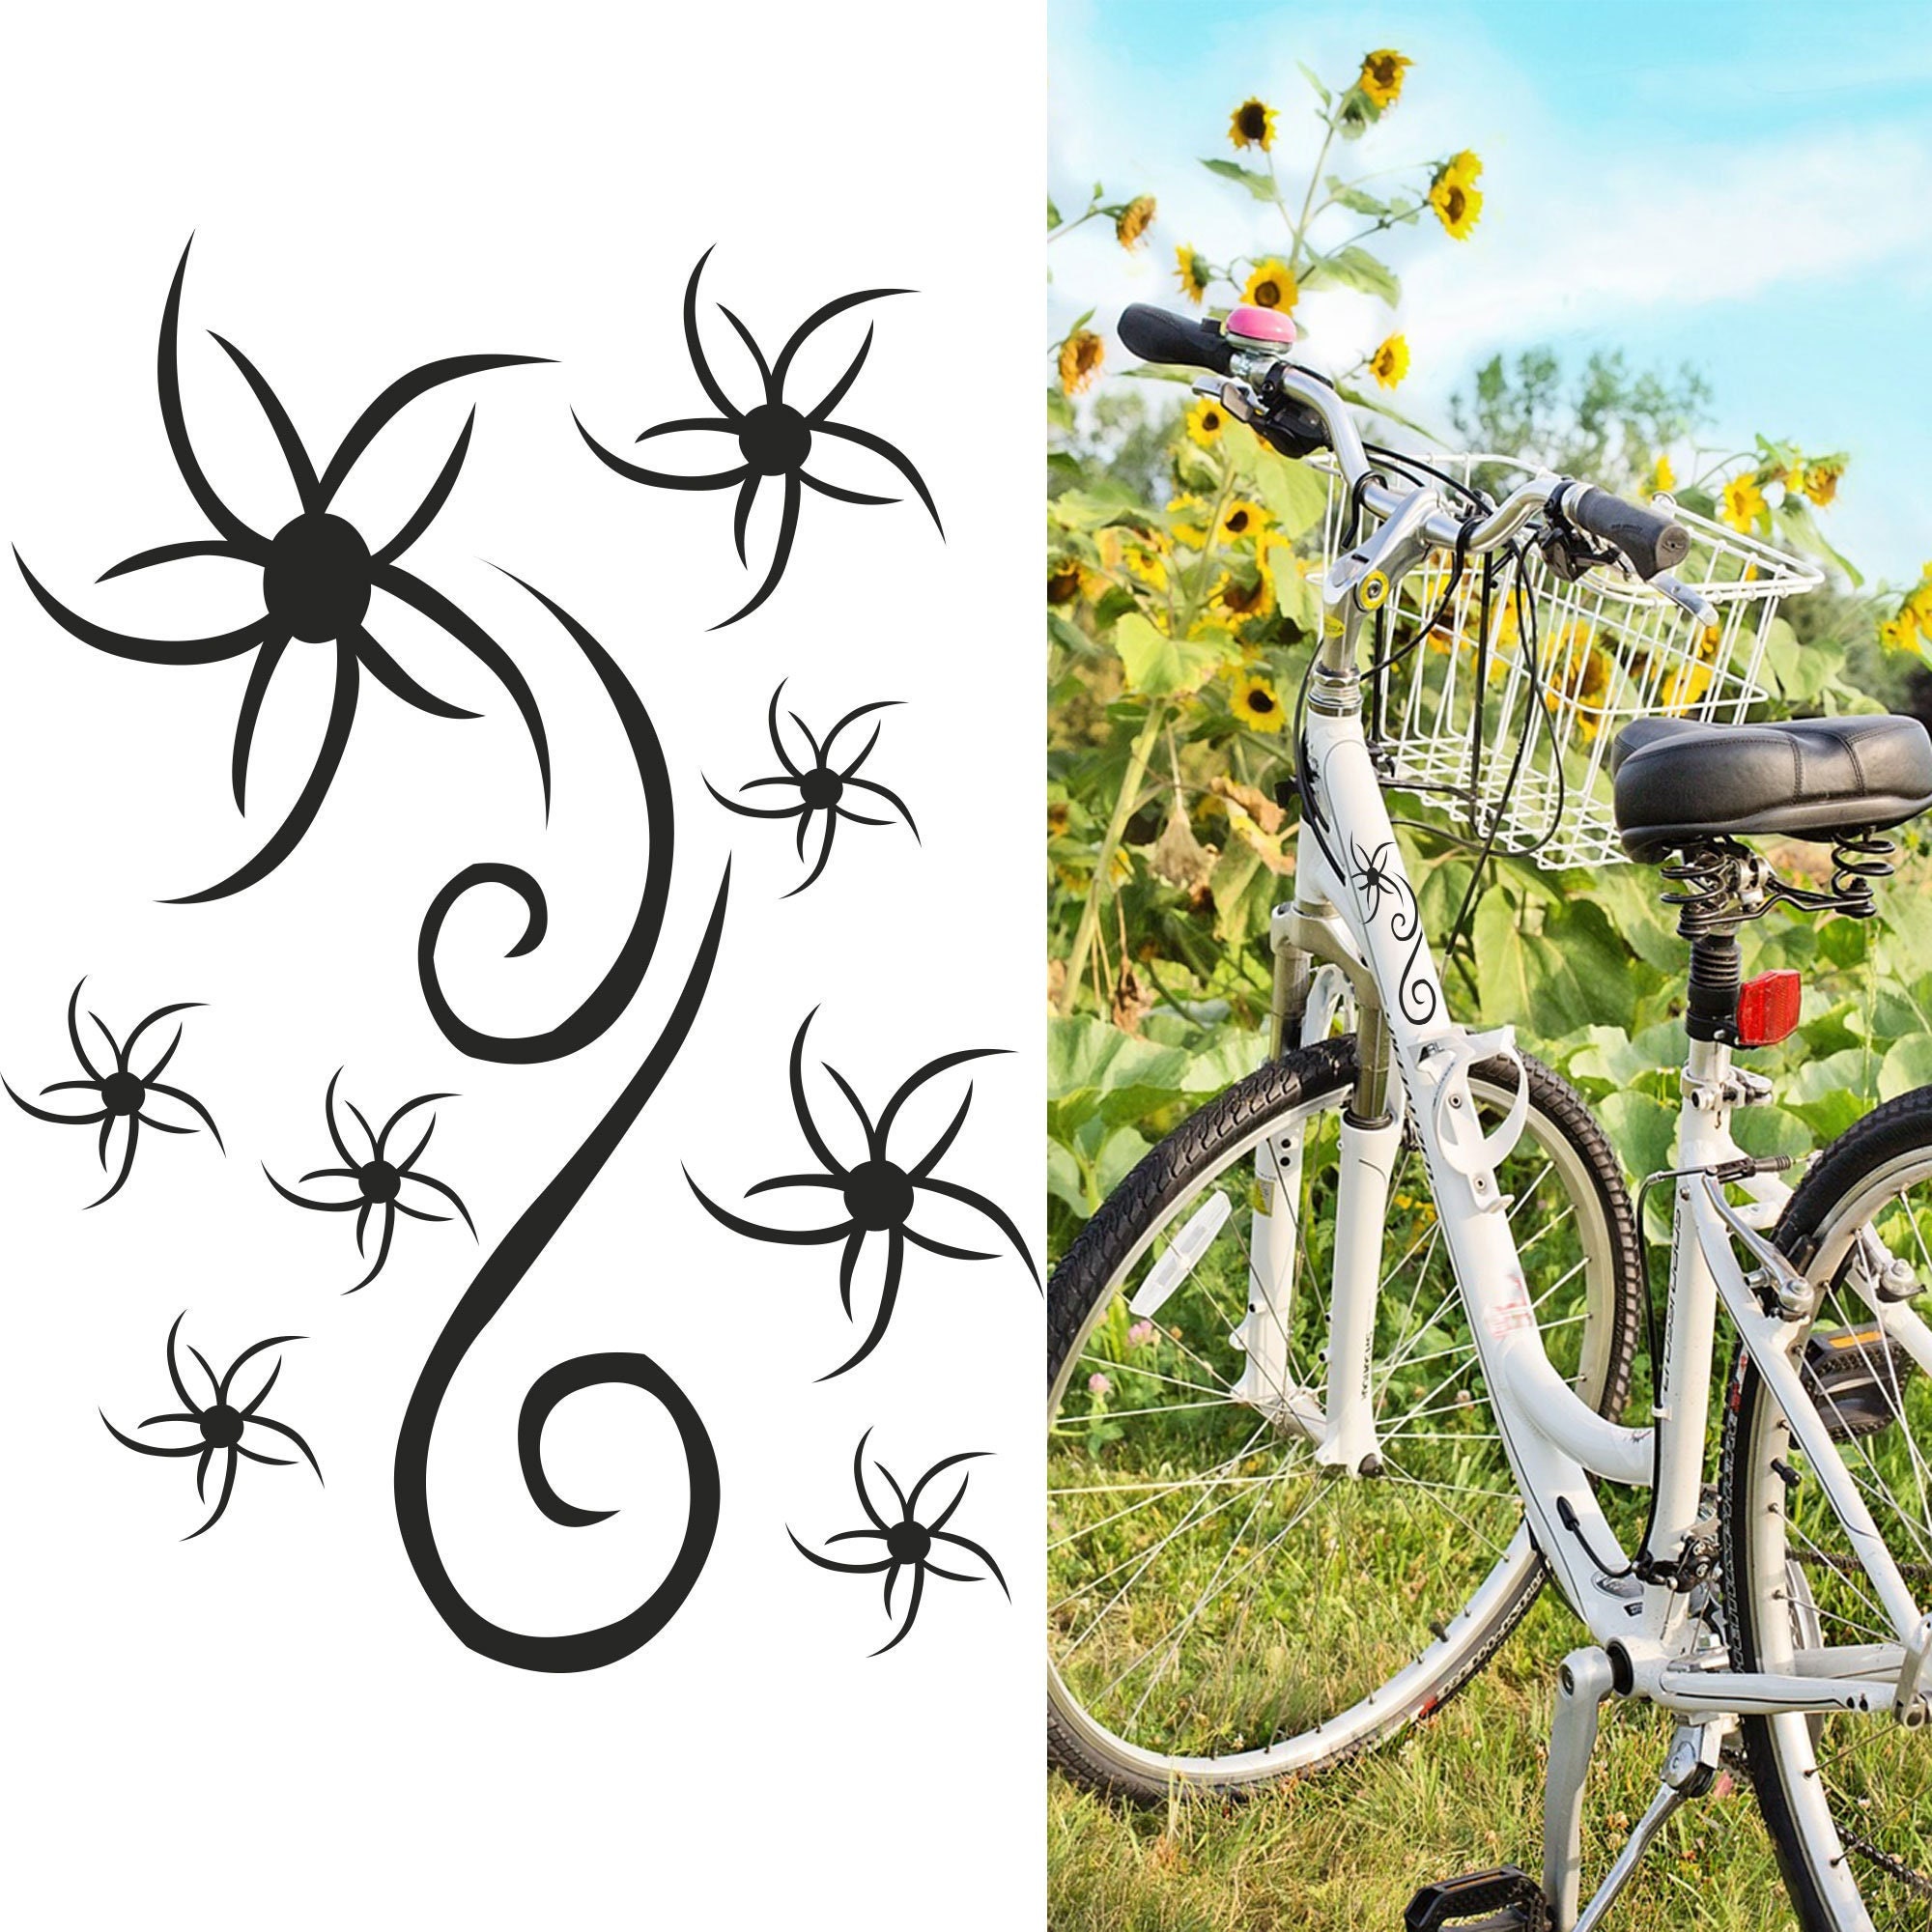 Divertenti adesivi decorativi per biciclette, frecce, decalcomanie per bici.  -  Italia